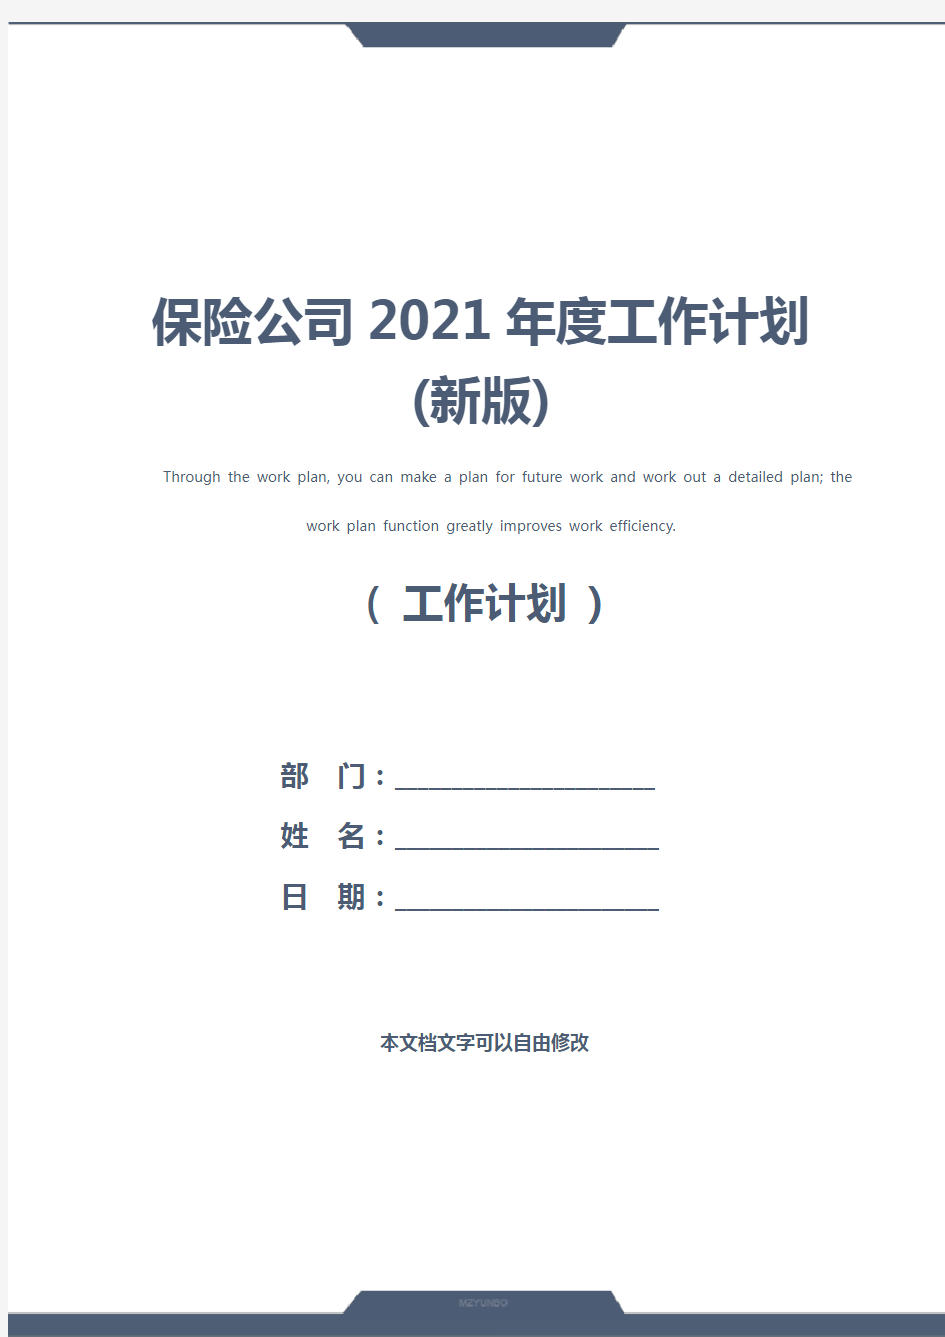 保险公司2021年度工作计划(新版)